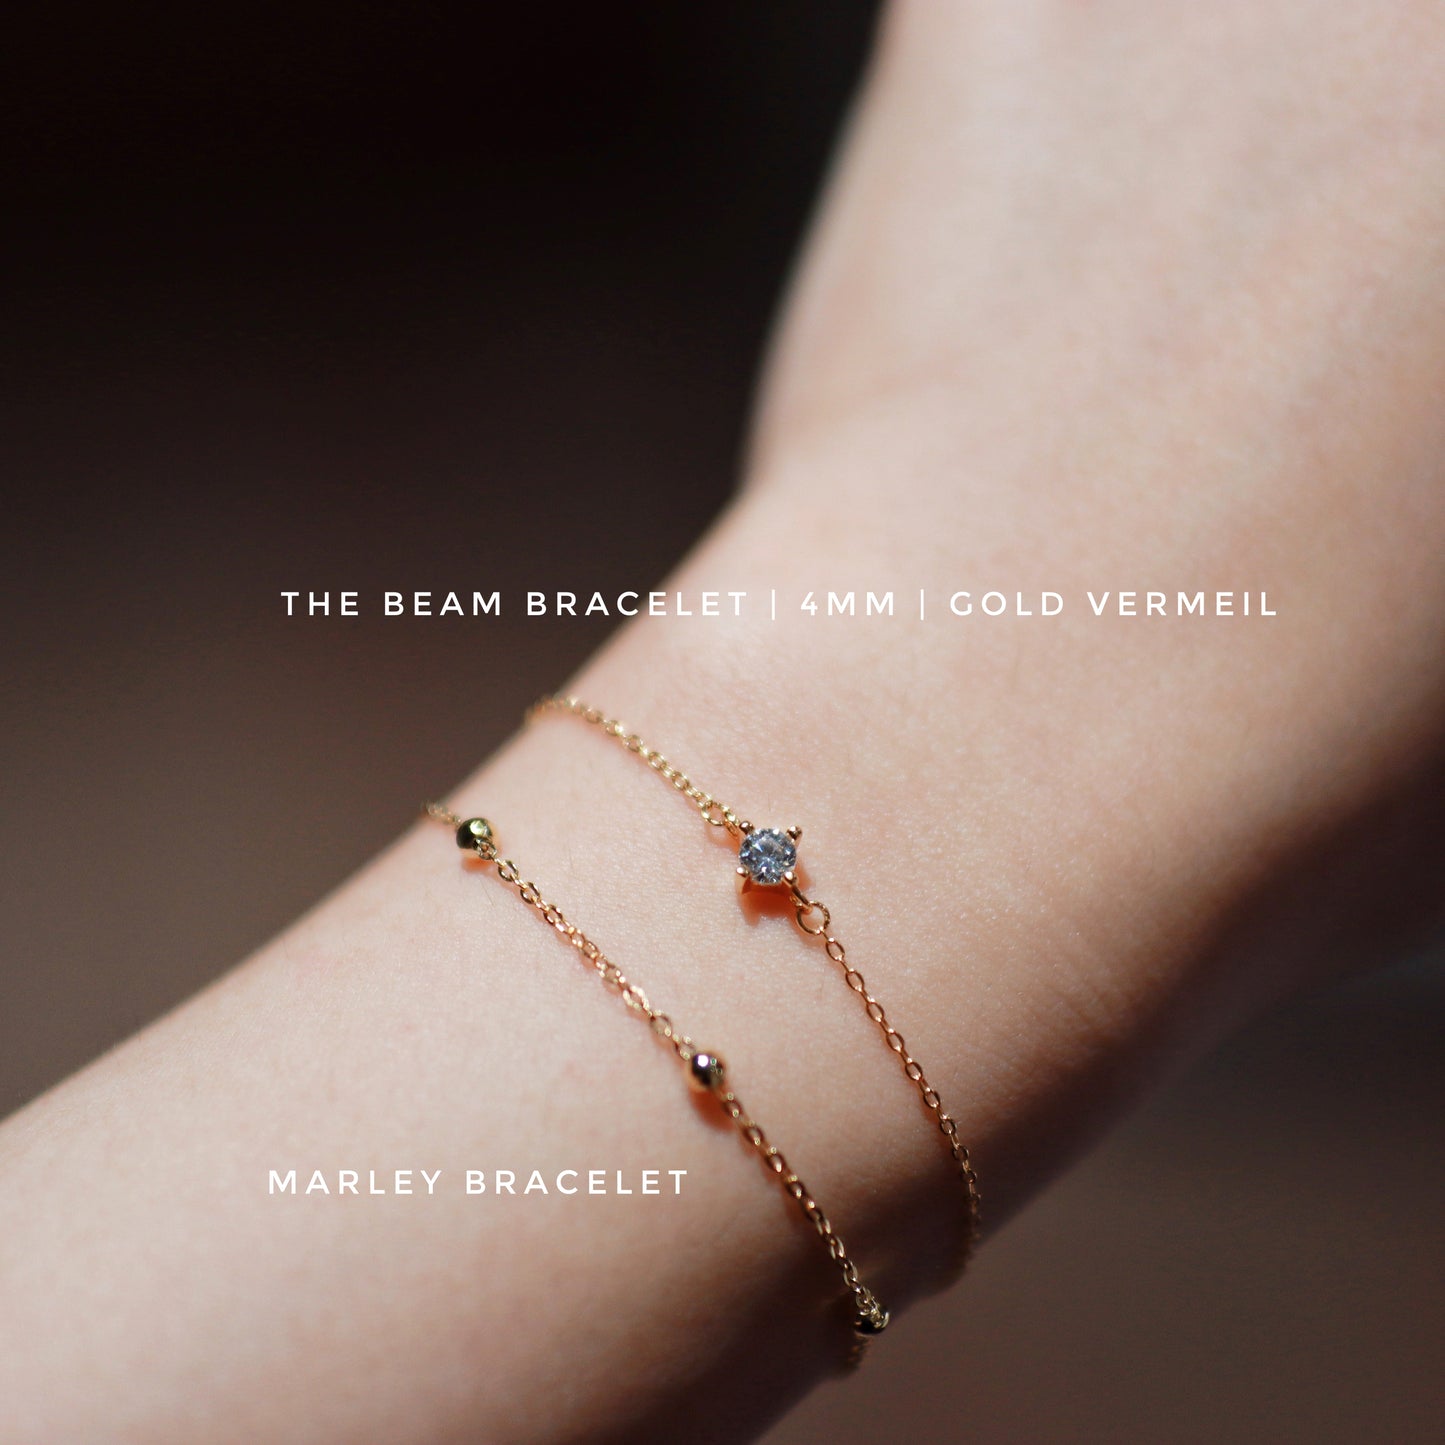 Marley Bracelet